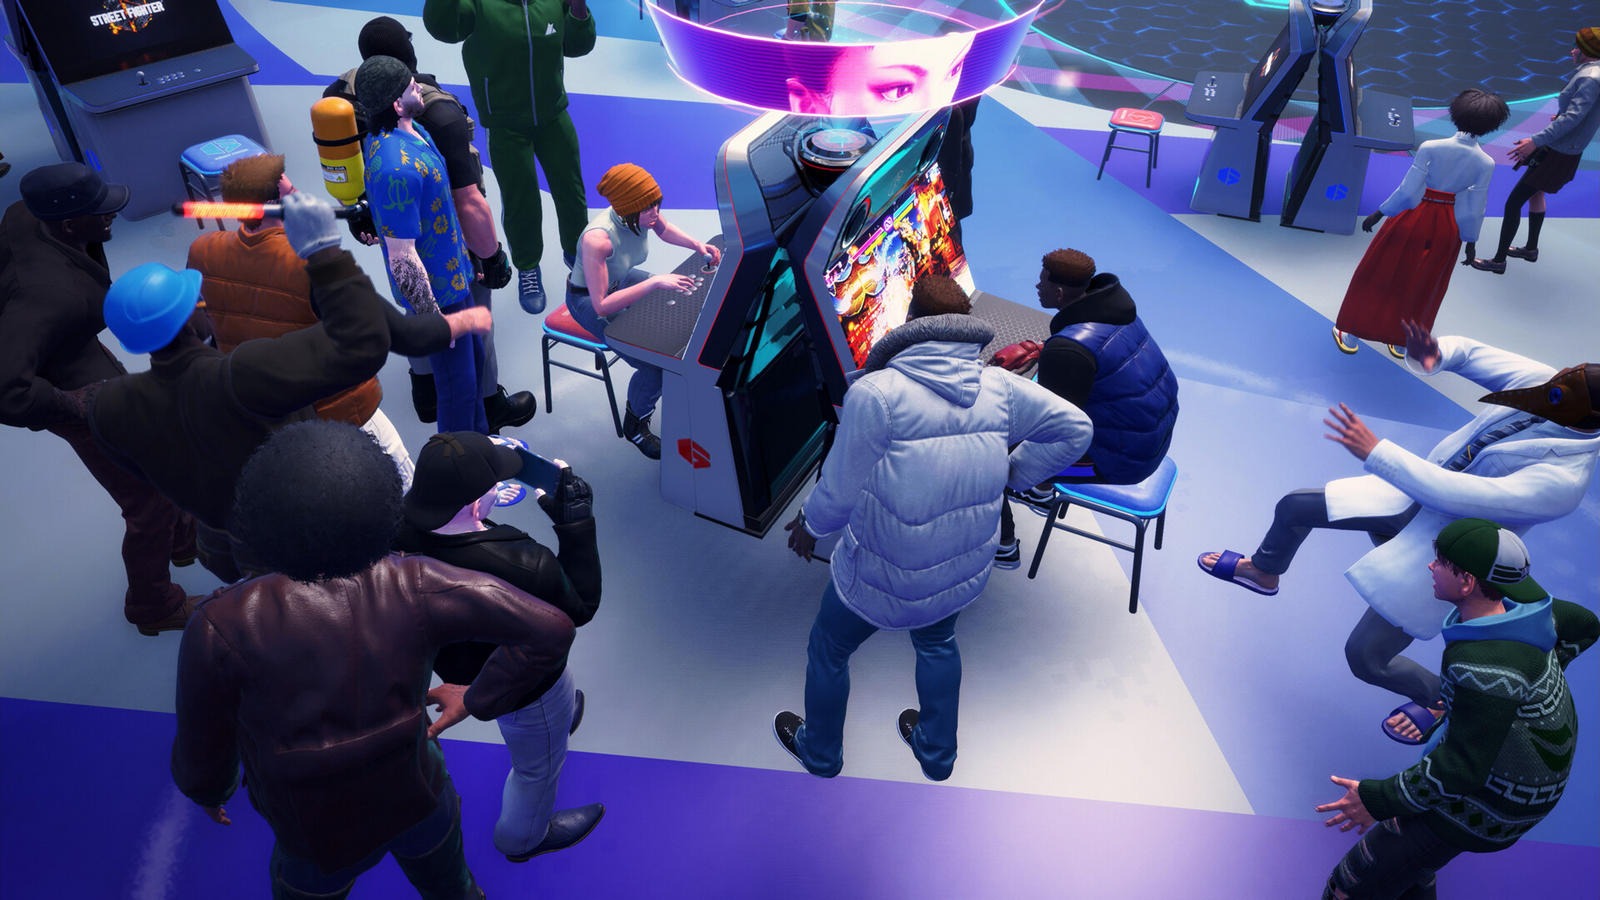 Phòng chờ trực tuyến của SF6 tái tạo trải nghiệm arcade.